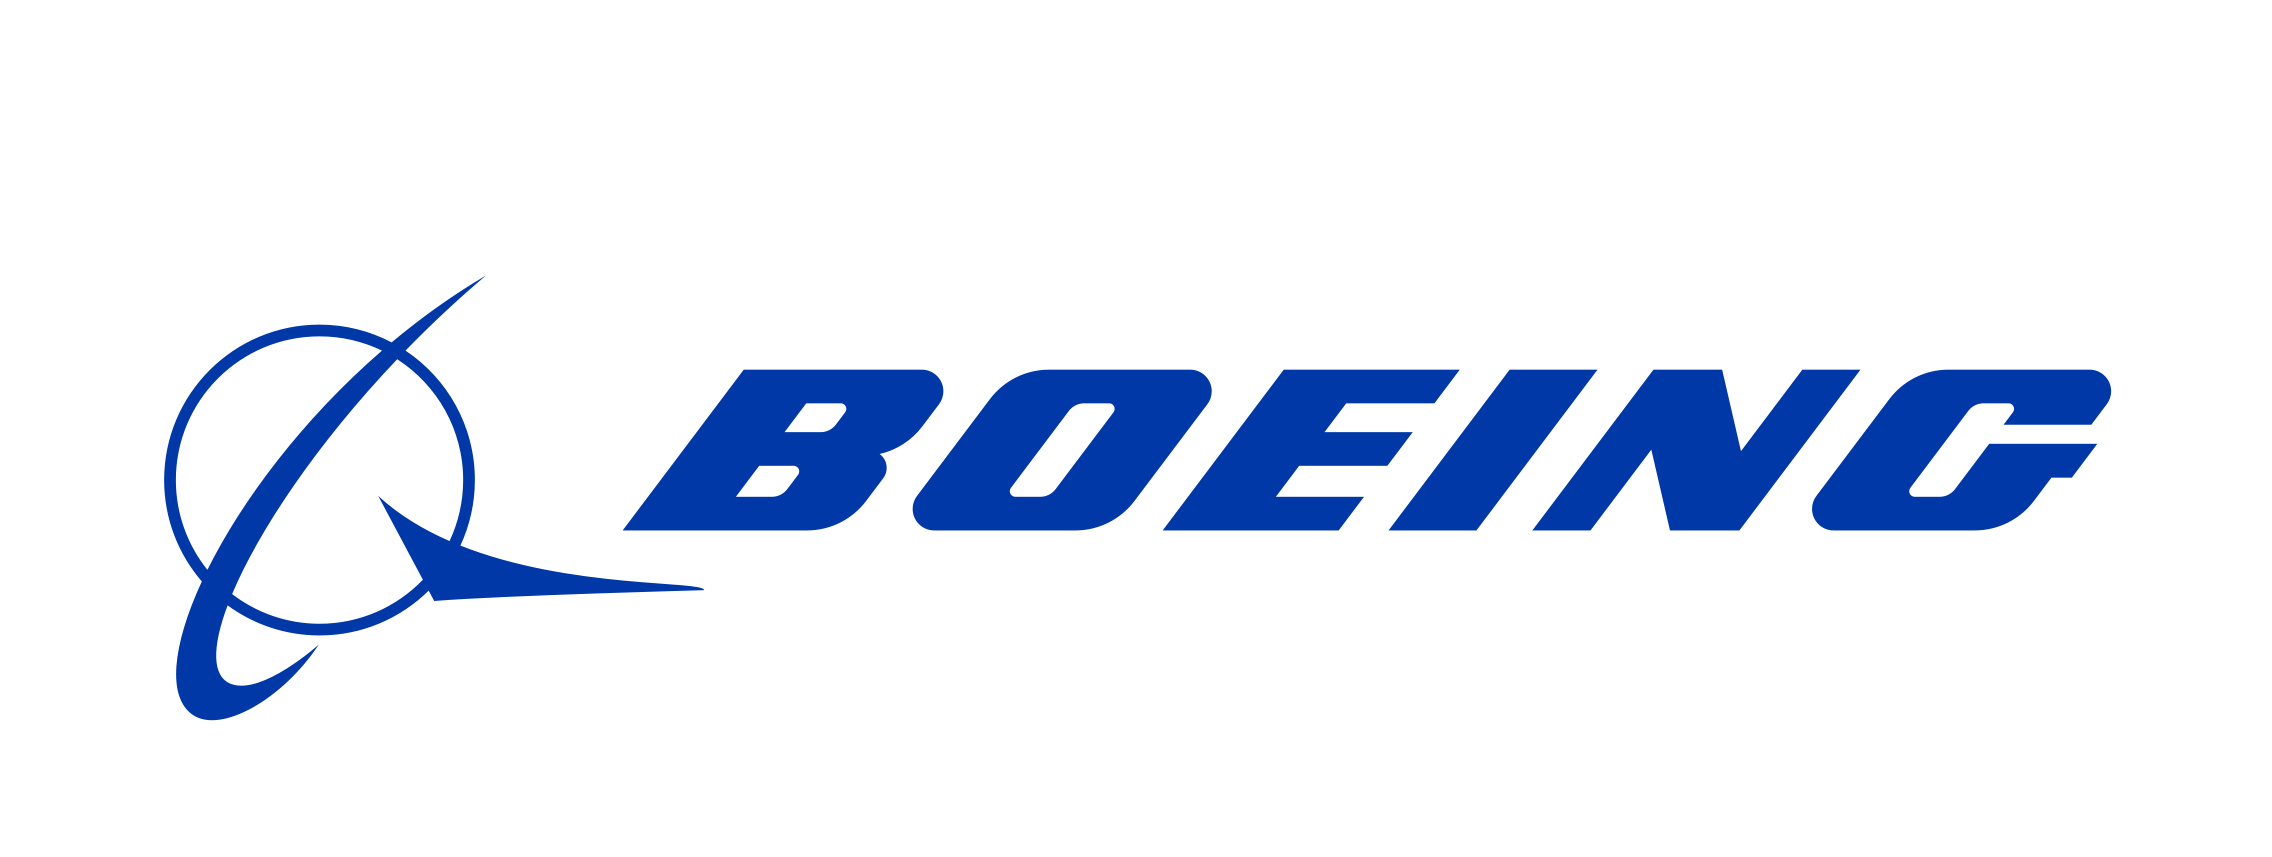 Купить акции Boeing